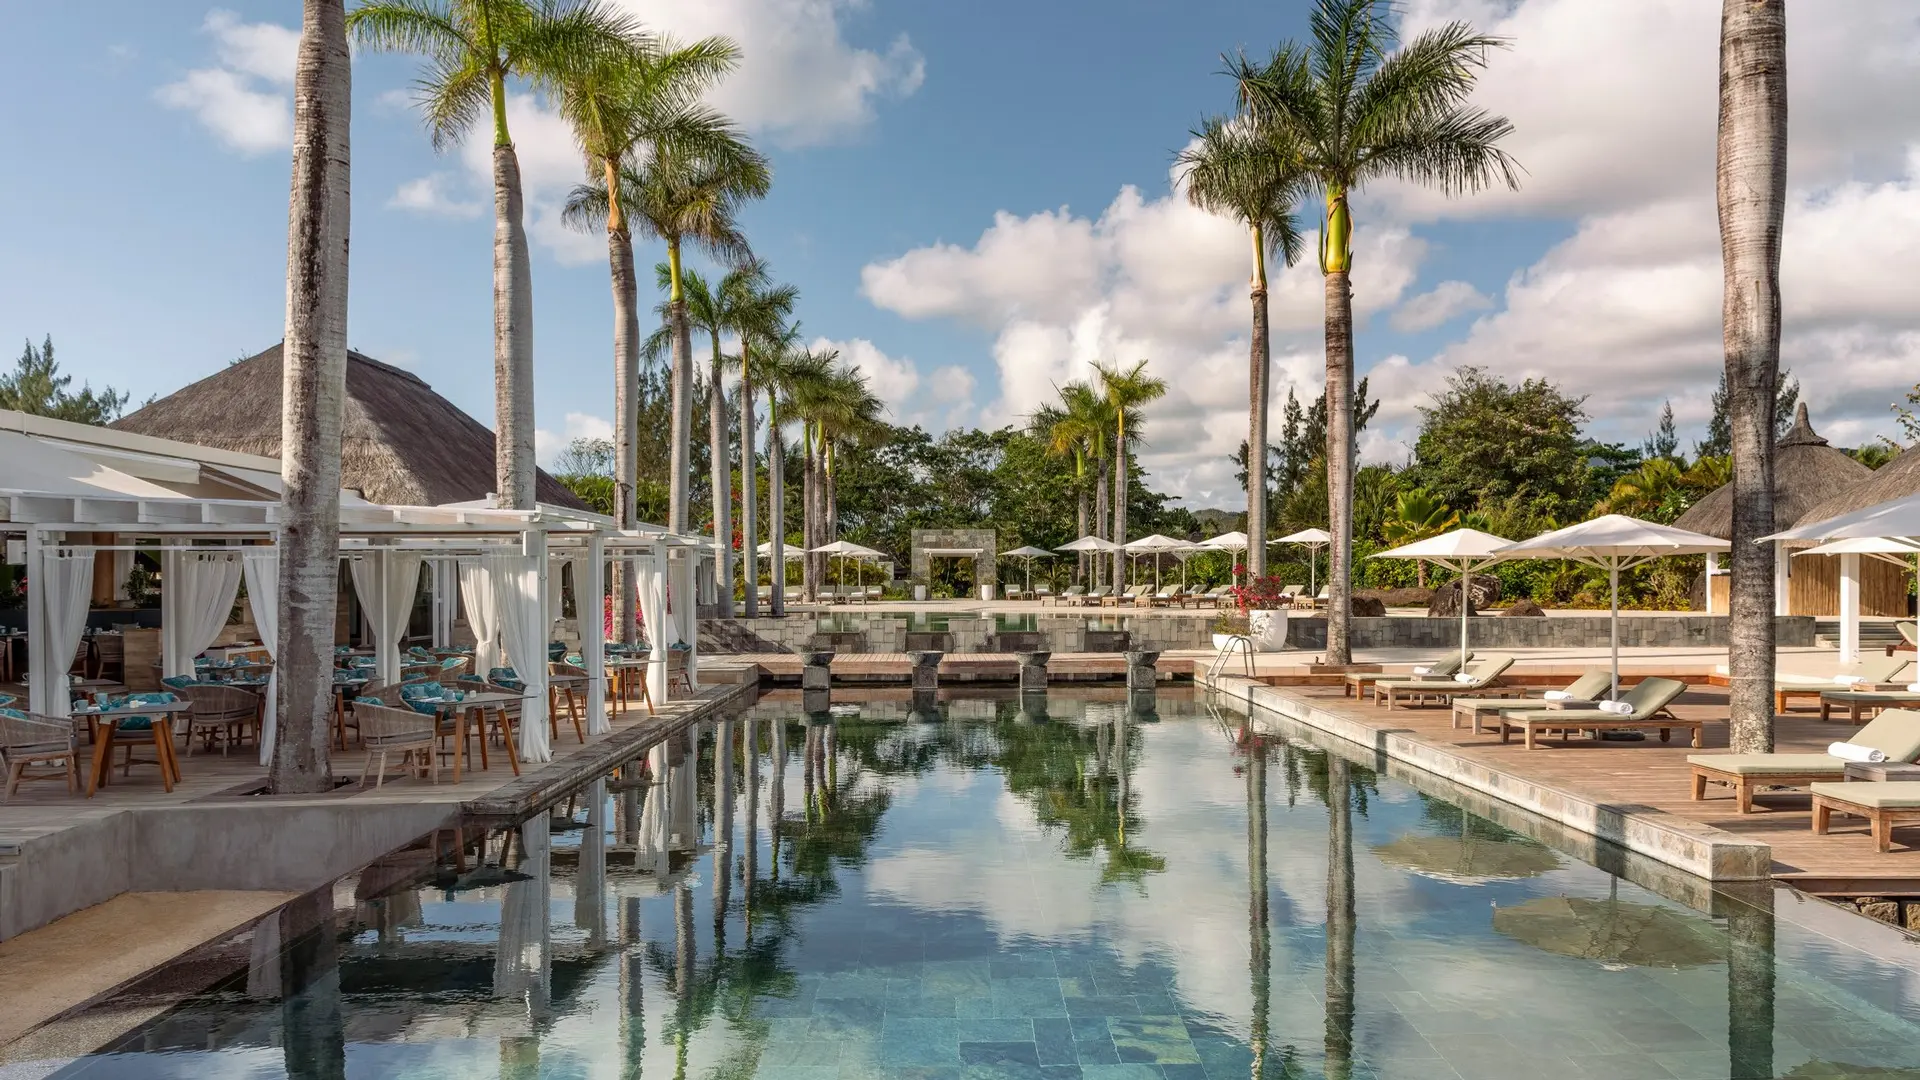 Hotel review Service & Facilities' - Four Seasons Resort Mauritius at Anahita - 9